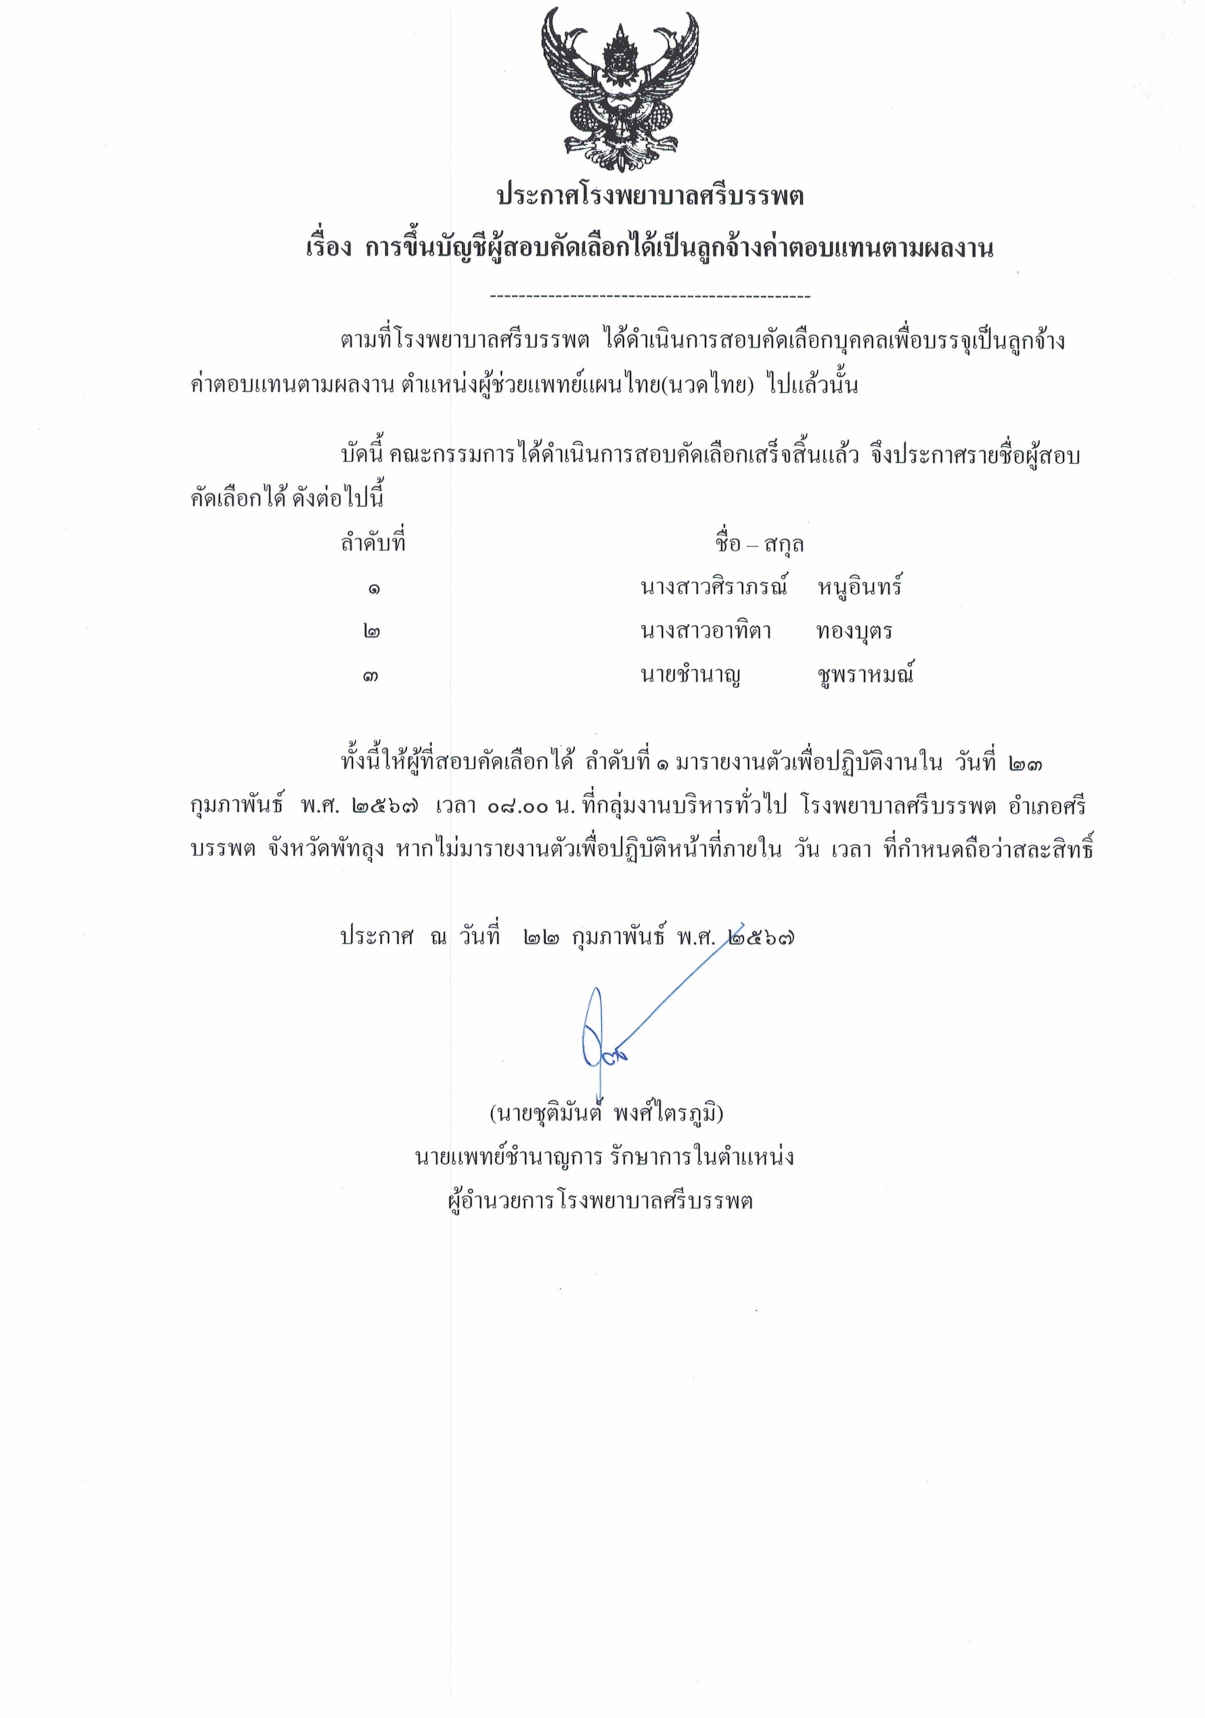 ประกาศผู้สอบได้แผนไทย22022567 page 0001